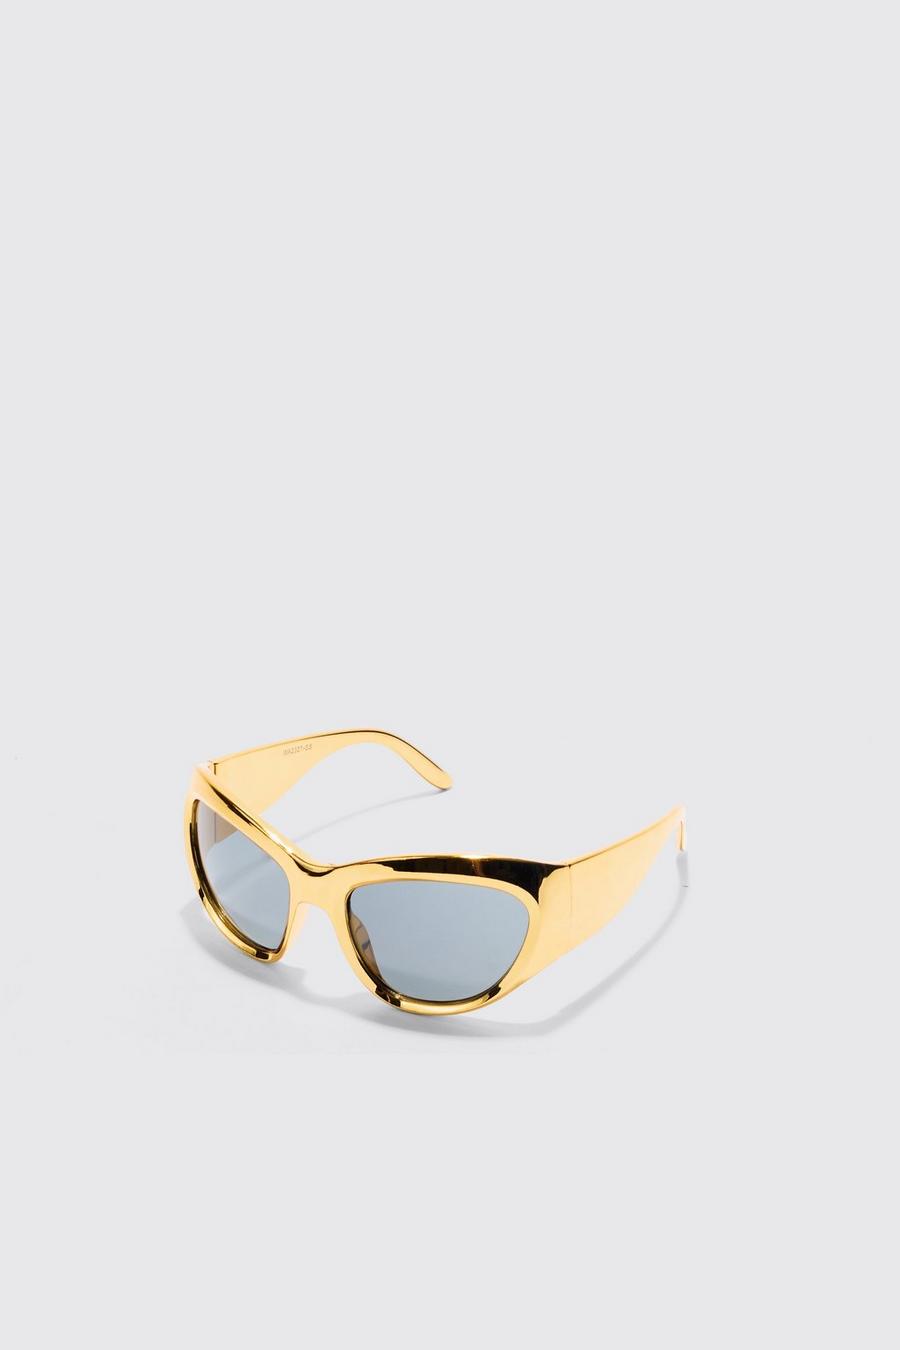 Sonnenbrille mit Metallic-Gestell, Gold